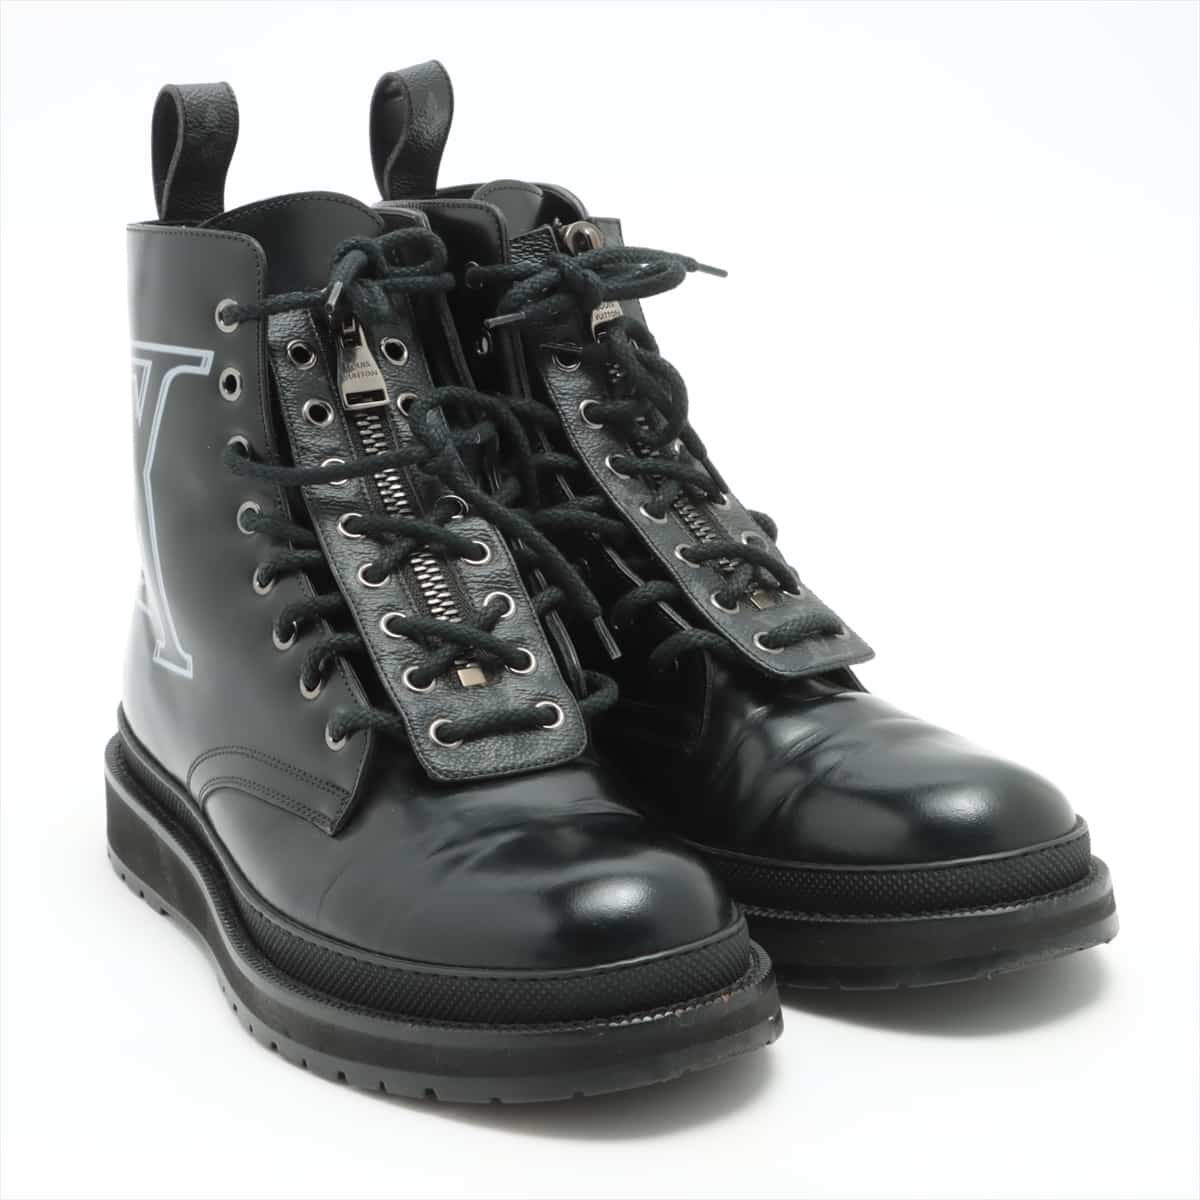 Louis Vuitton × fragment design VBlack ice line 18 years Leather Boots 7 1/2 Men's Black BM0138